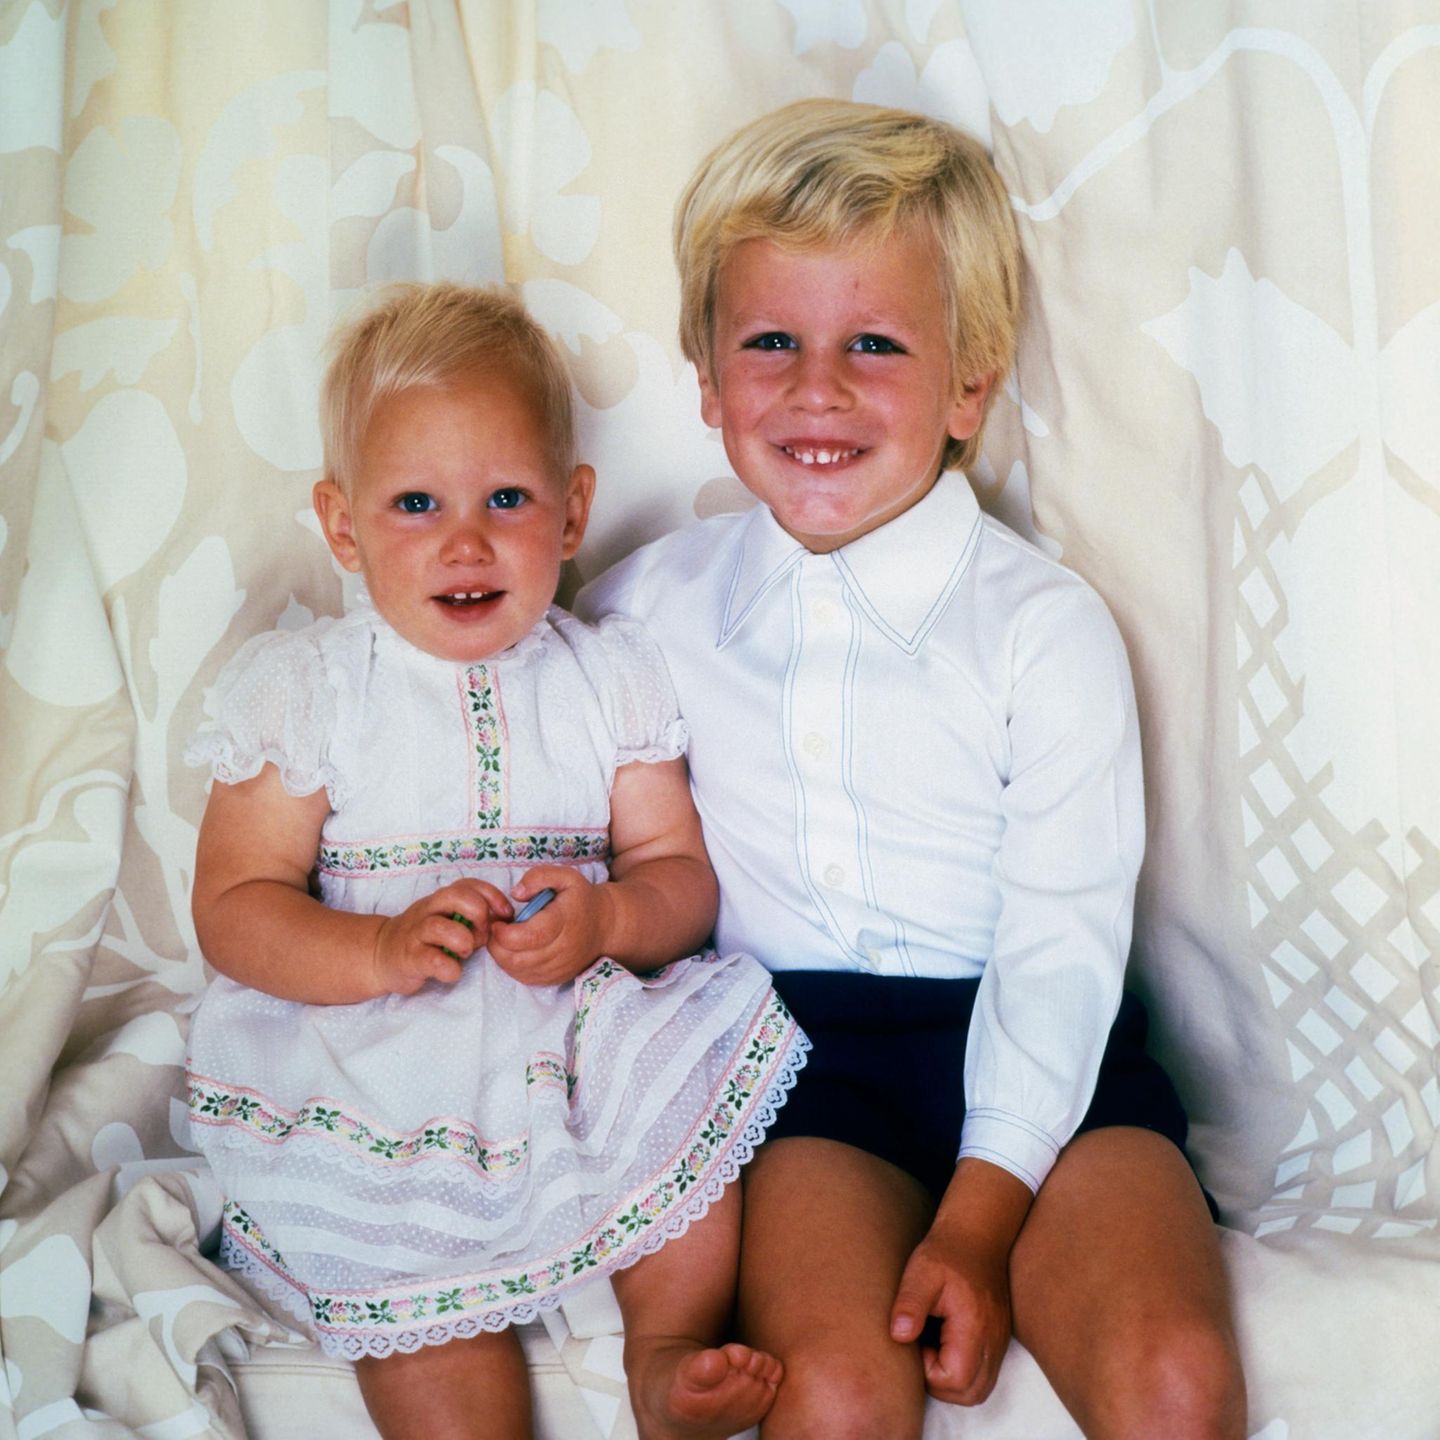 Diese beiden Blondschöpfe sind Zara und Peter Phillips, der Kinder von Prinzessin Anne und ihrem Mann Mark Phillips.   Beide sind bereits Eltern und so kann man vergleichen, wie sich die windsorschen Gene in der nächsten Generation durchgesetzt haben.